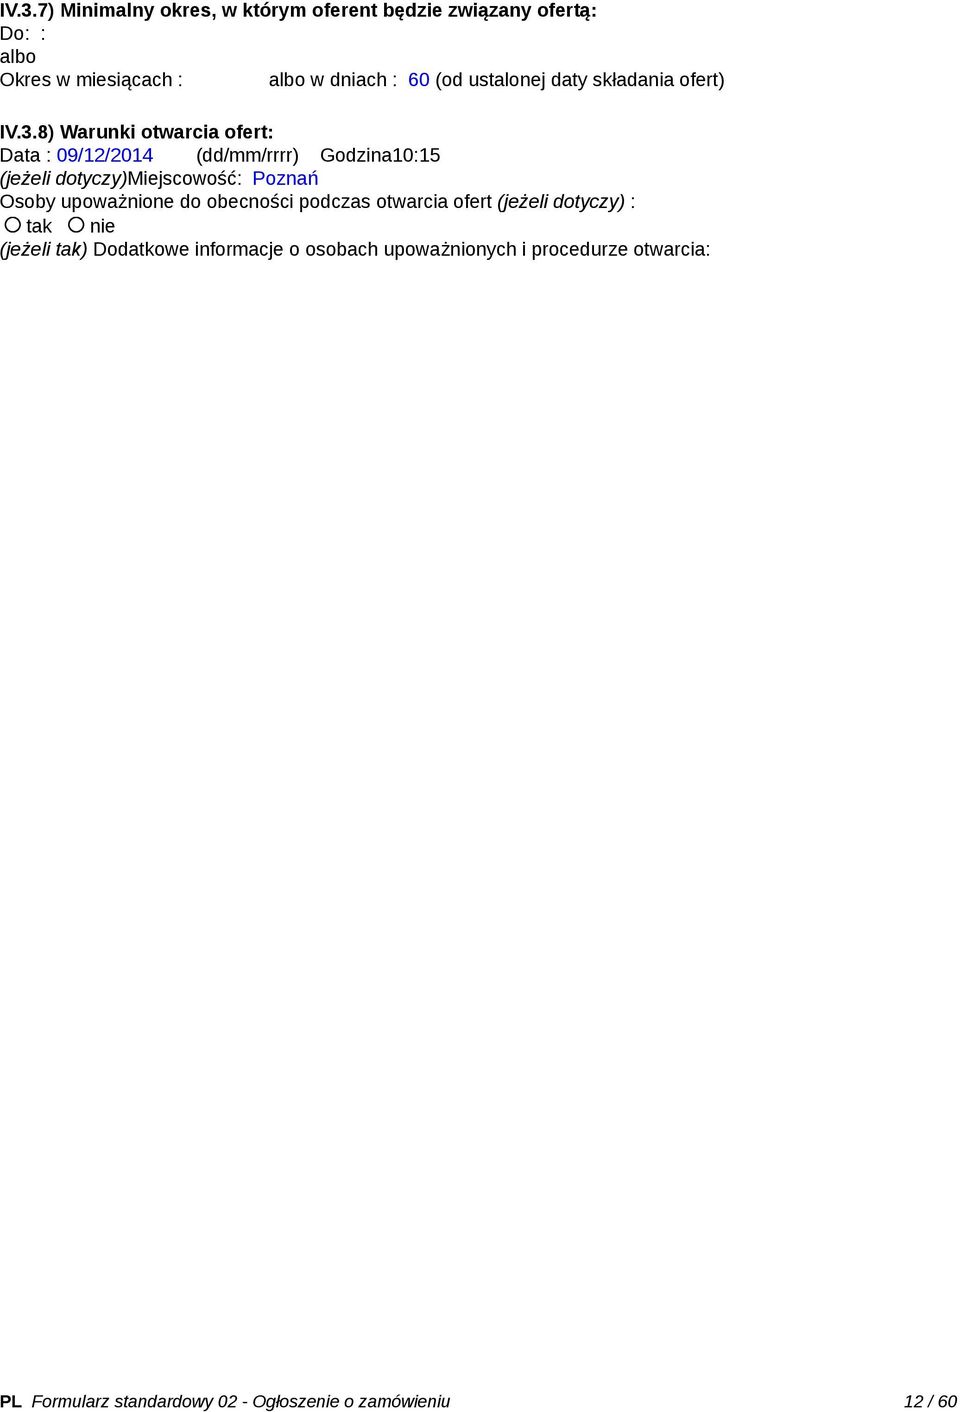 8) Warunki otwarcia ofert: Data : 09/12/2014 (dd/mm/rrrr) Godzina10:15 (jeżeli dotyczy)miejscowość: Poznań Osoby